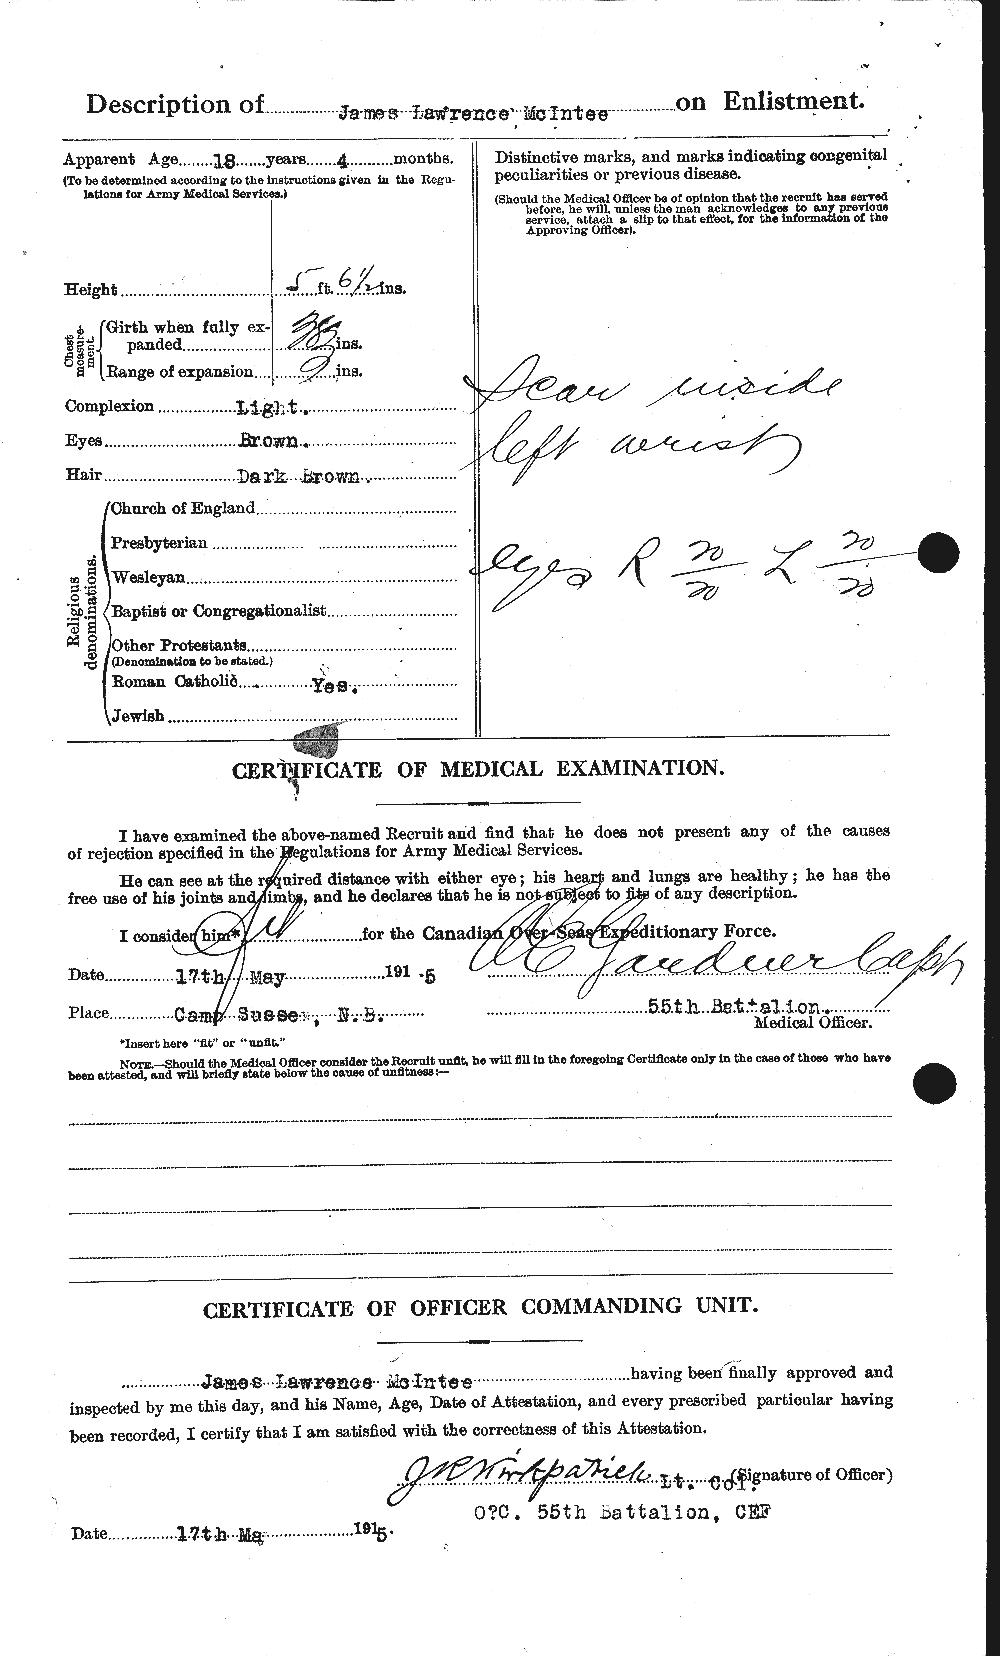 Dossiers du Personnel de la Première Guerre mondiale - CEC 530565b